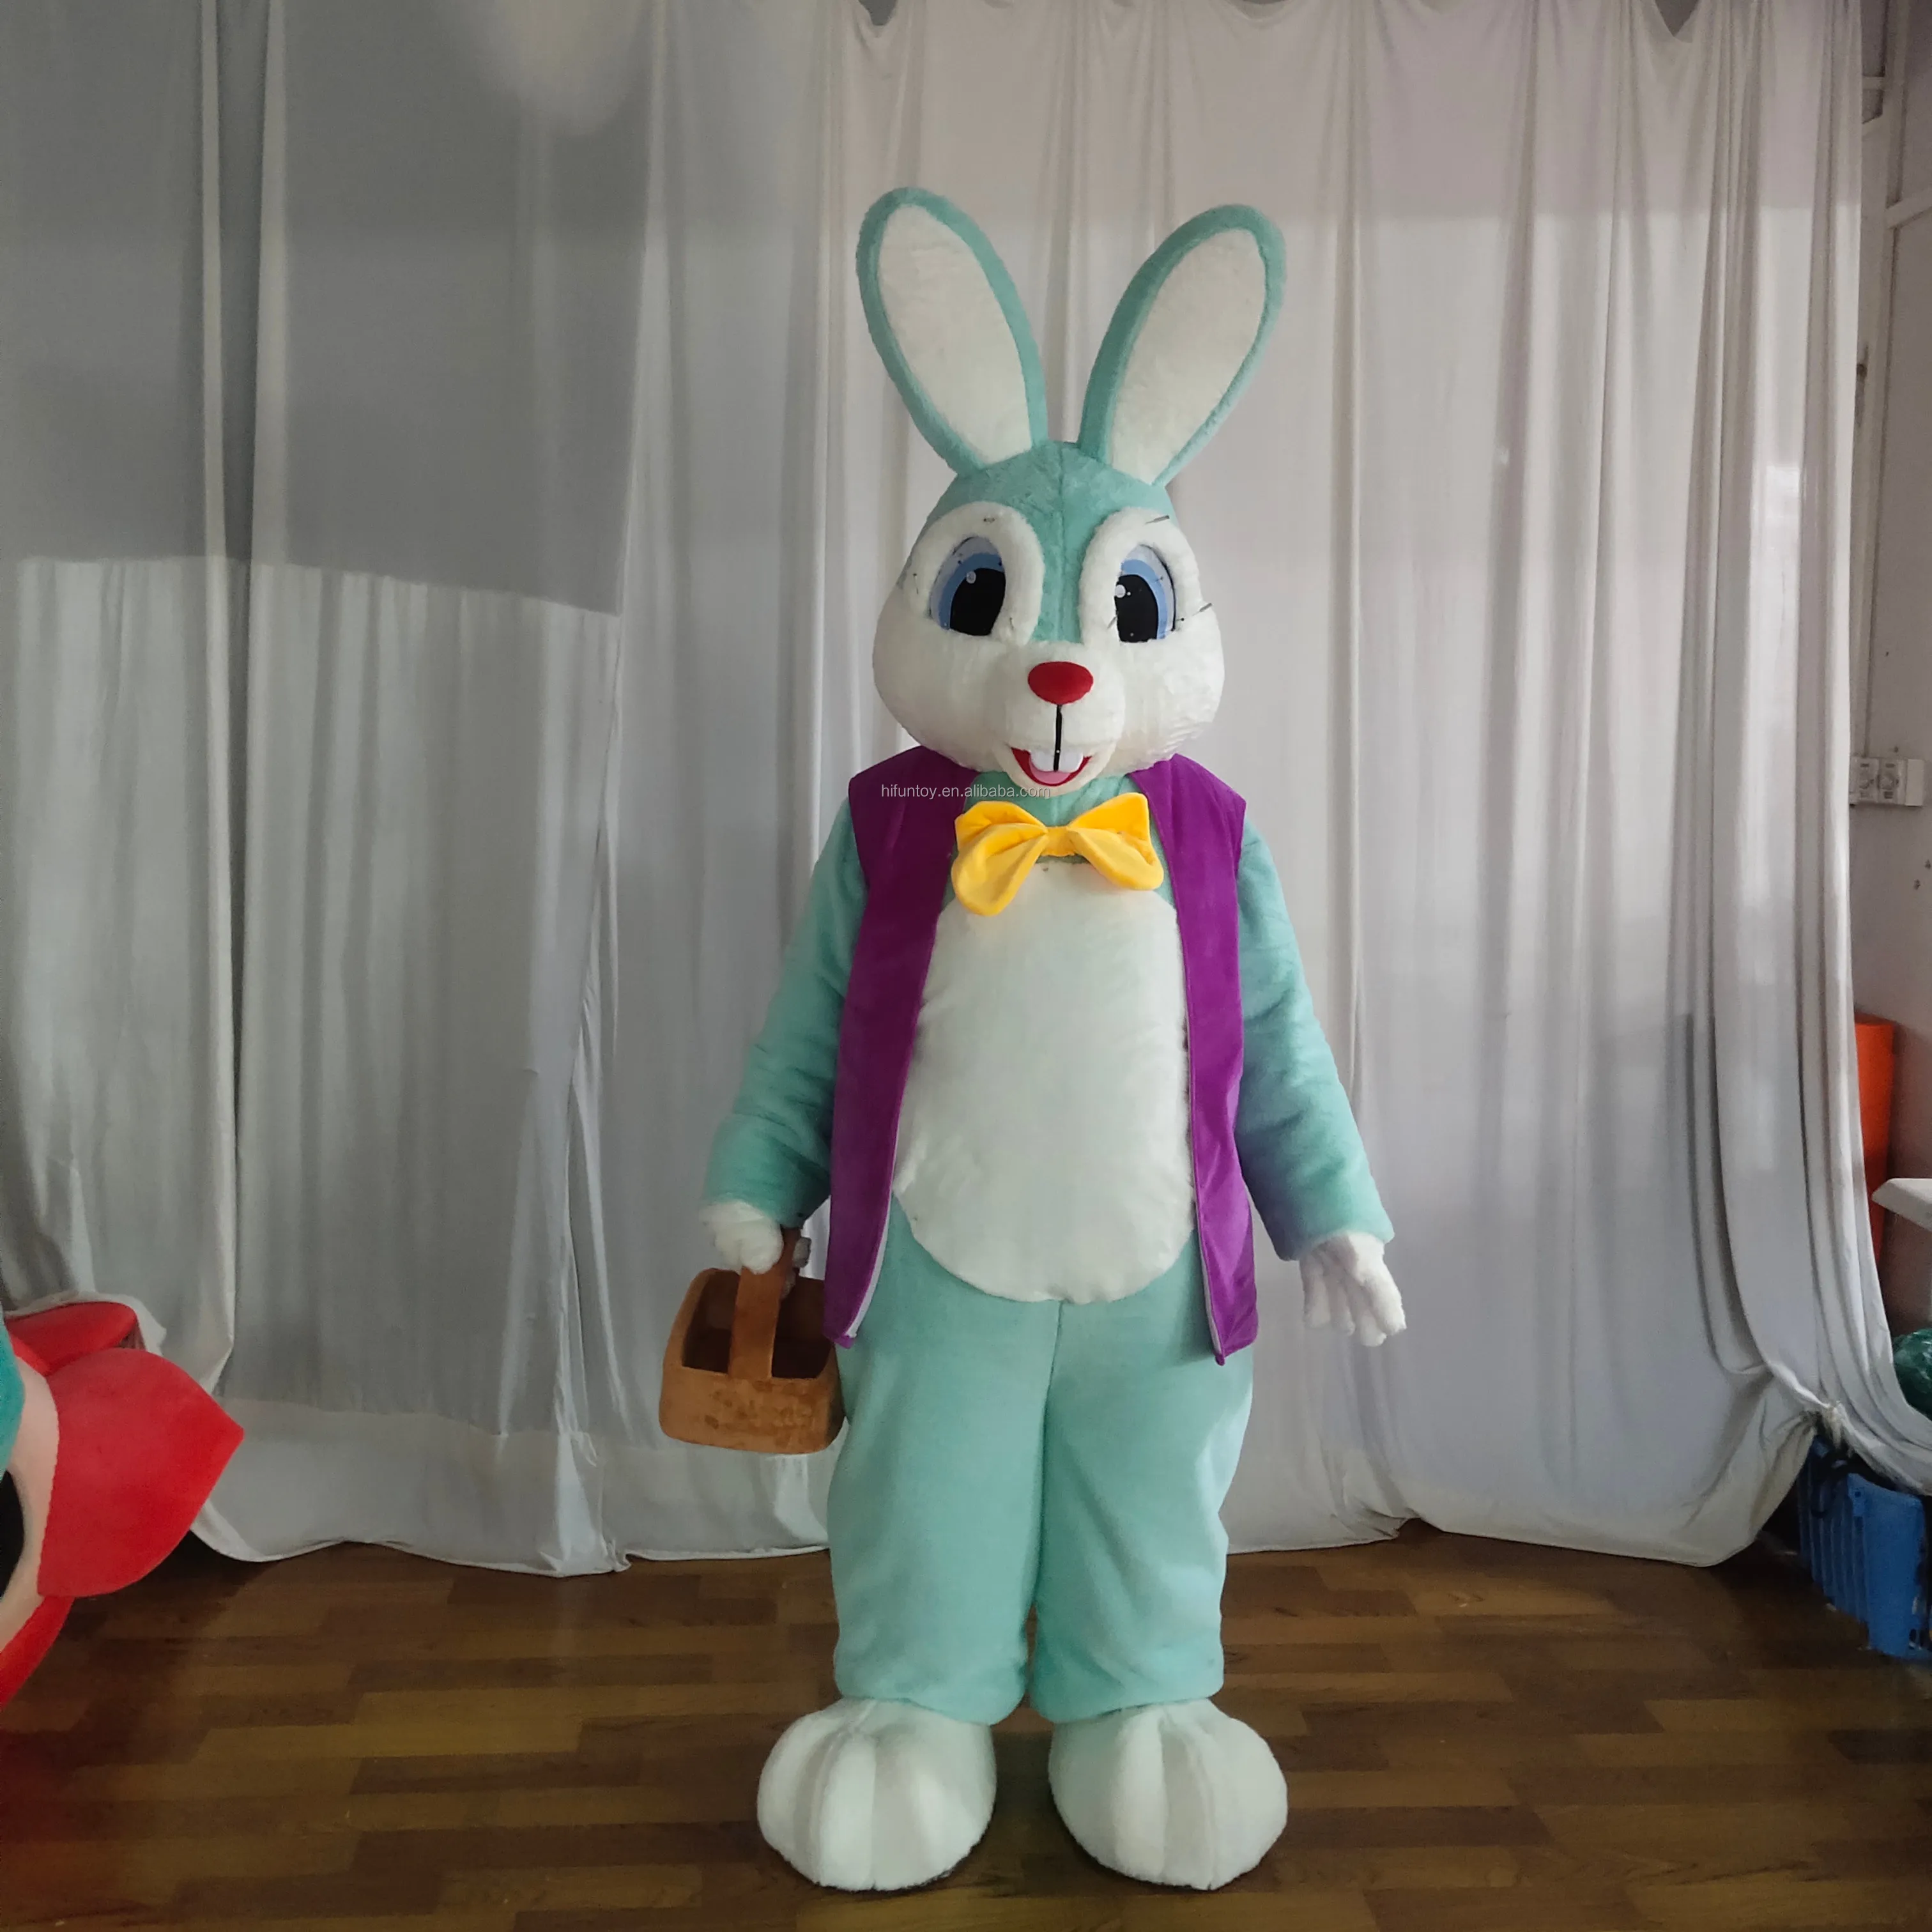 Thỏ linh vật phục sinh thỏ Trang phục dành cho người lớn ưa thích ăn mặc trắng dành cho người lớn phục sinh Thỏ linh vật đi bộ trang phục cho Halloween bên tổ chức sự kiện